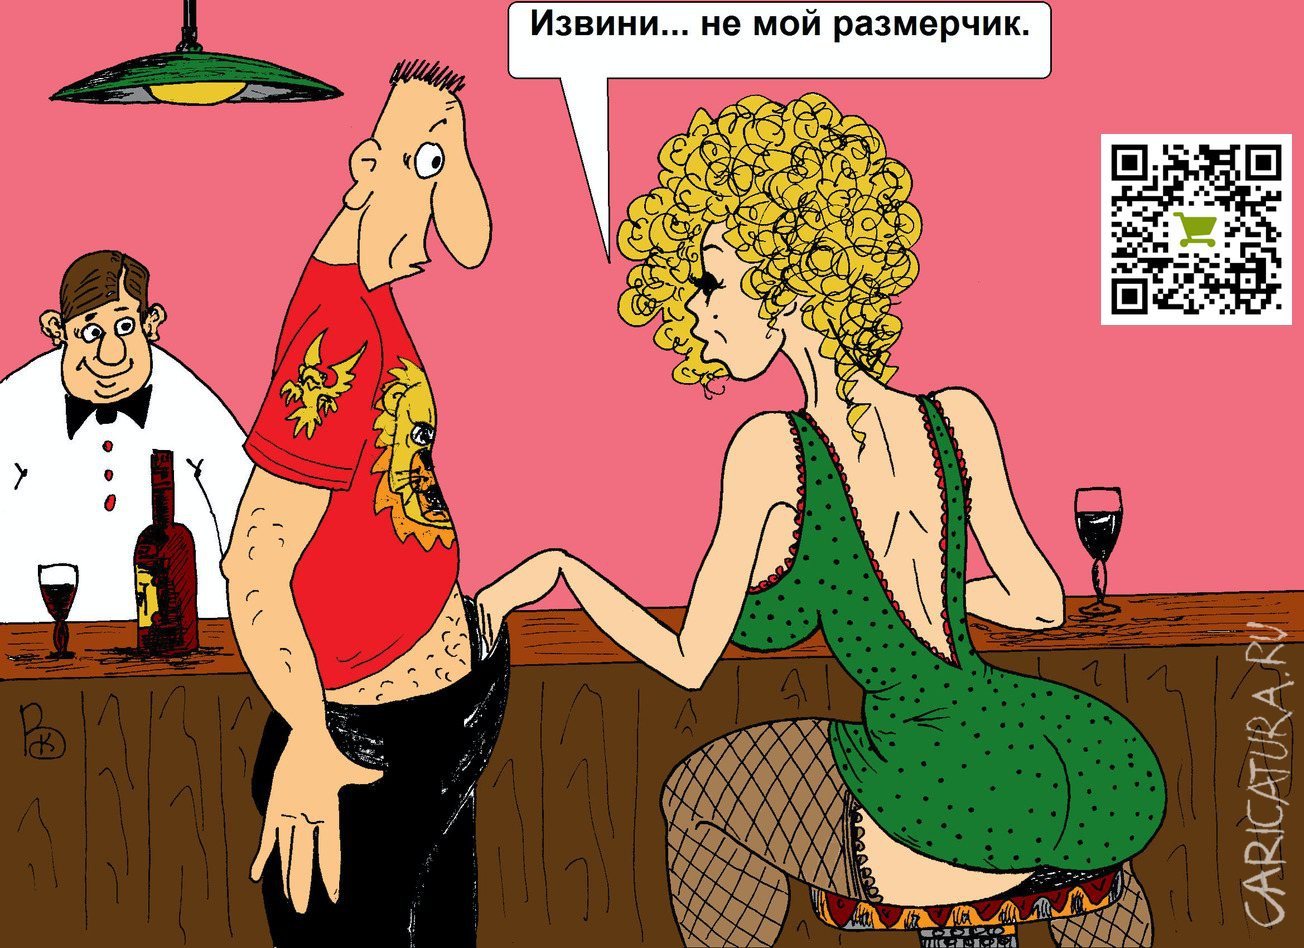 Порно баба в бане карикатура (61 фото) - порно и фото голых на optnp.ru